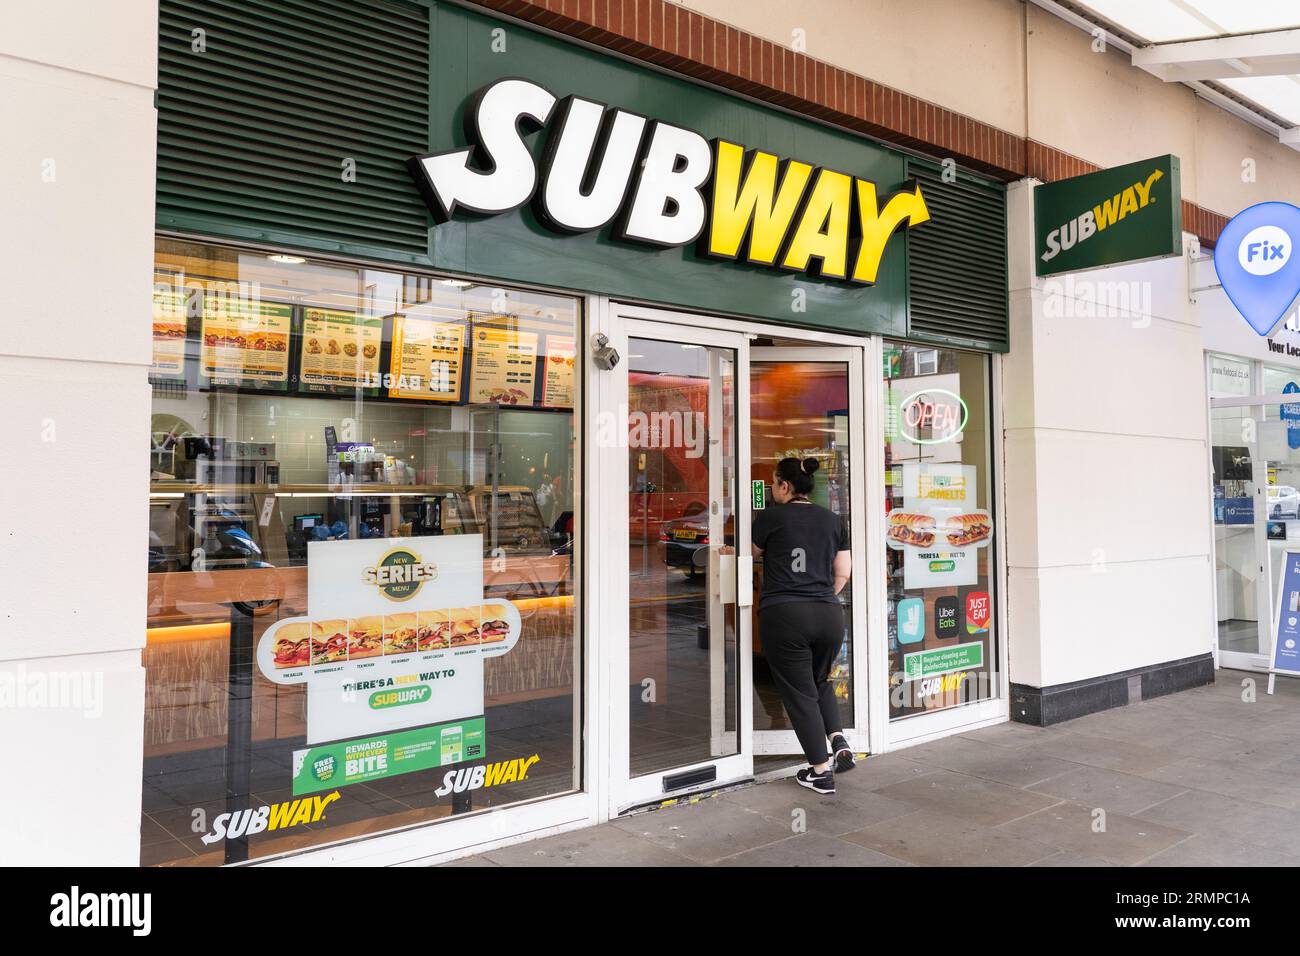 Une femme entrant dans un restaurant de plats à emporter Subway à Chelsea, Londres, Royaume-Uni. Subway est une franchise américaine de restauration rapide Banque D'Images